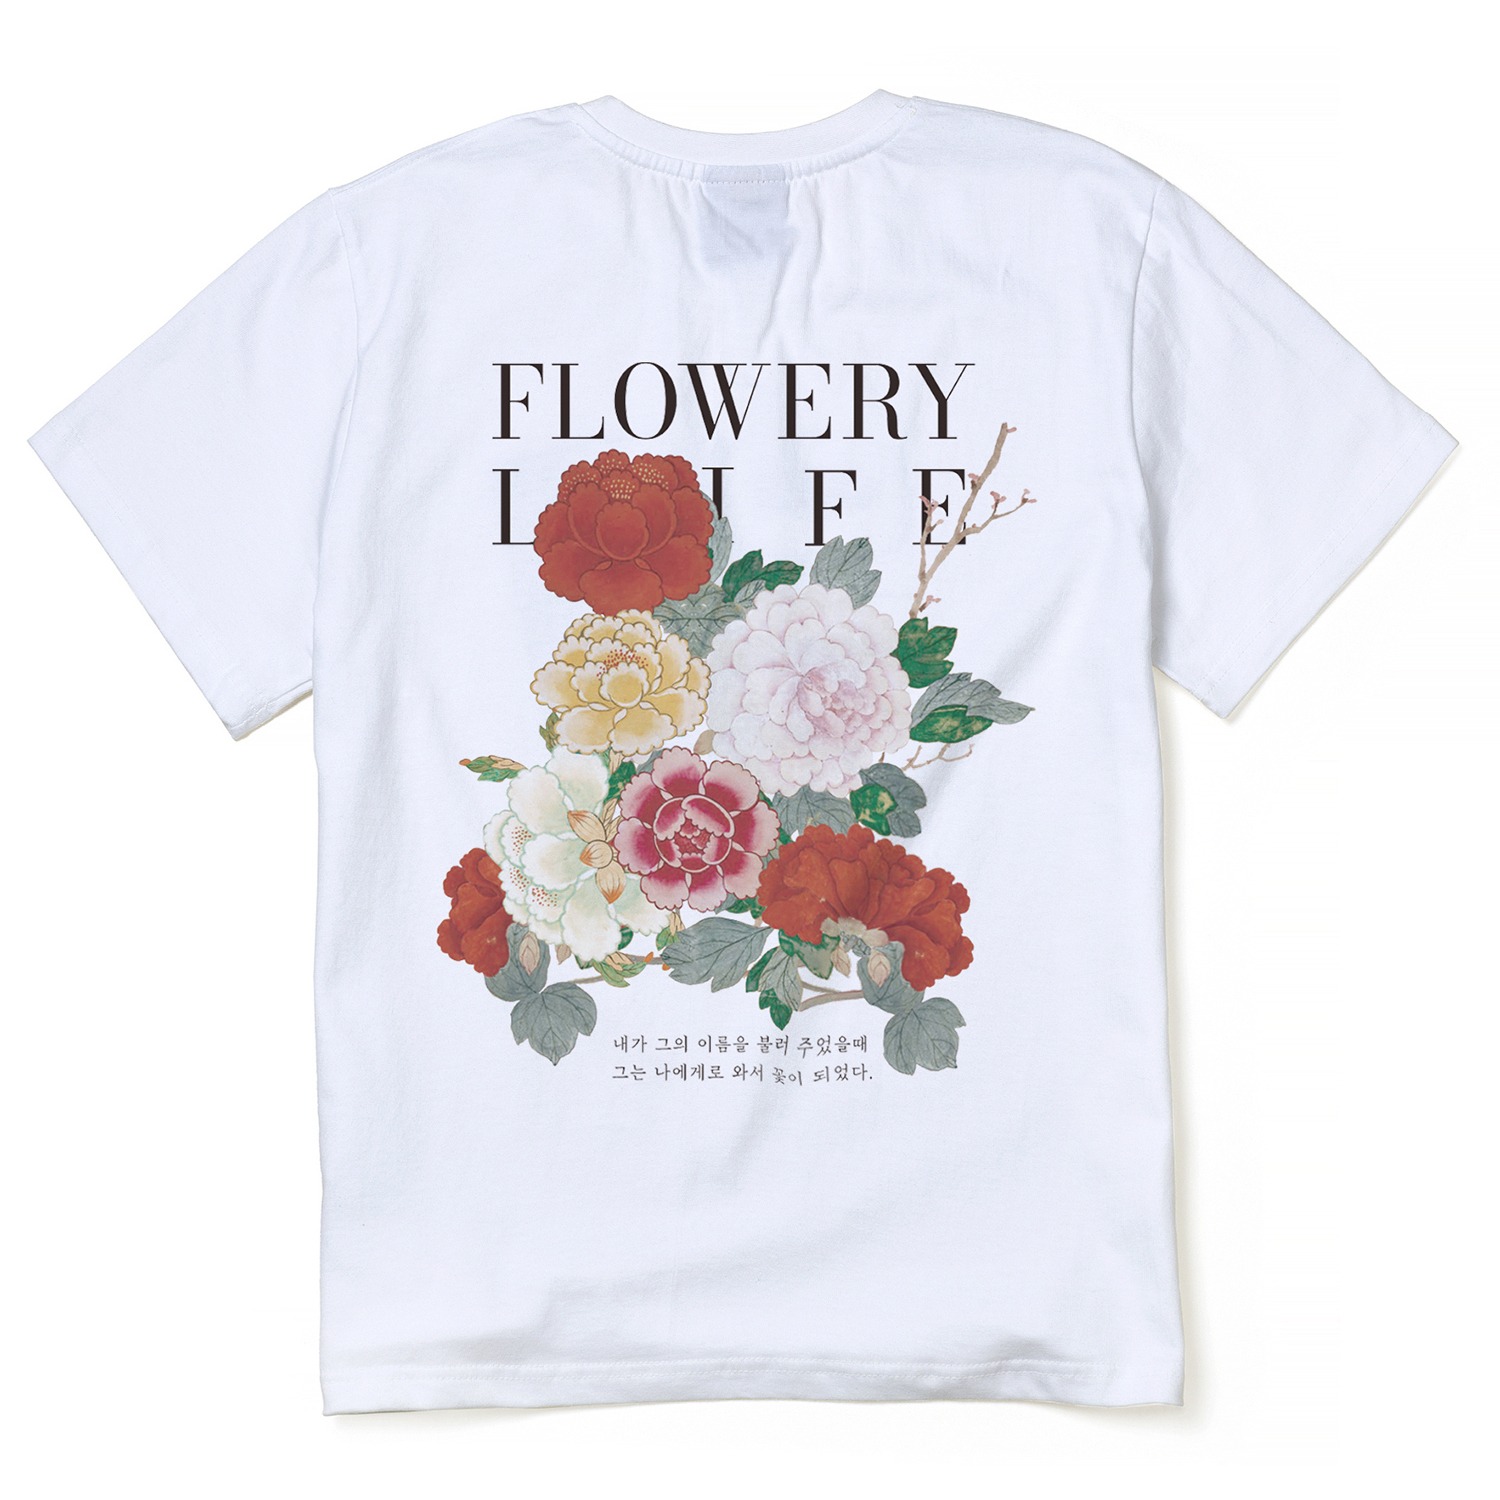 꽃같은 인생 티셔츠 화이트Flowery Life  T-shrtis White